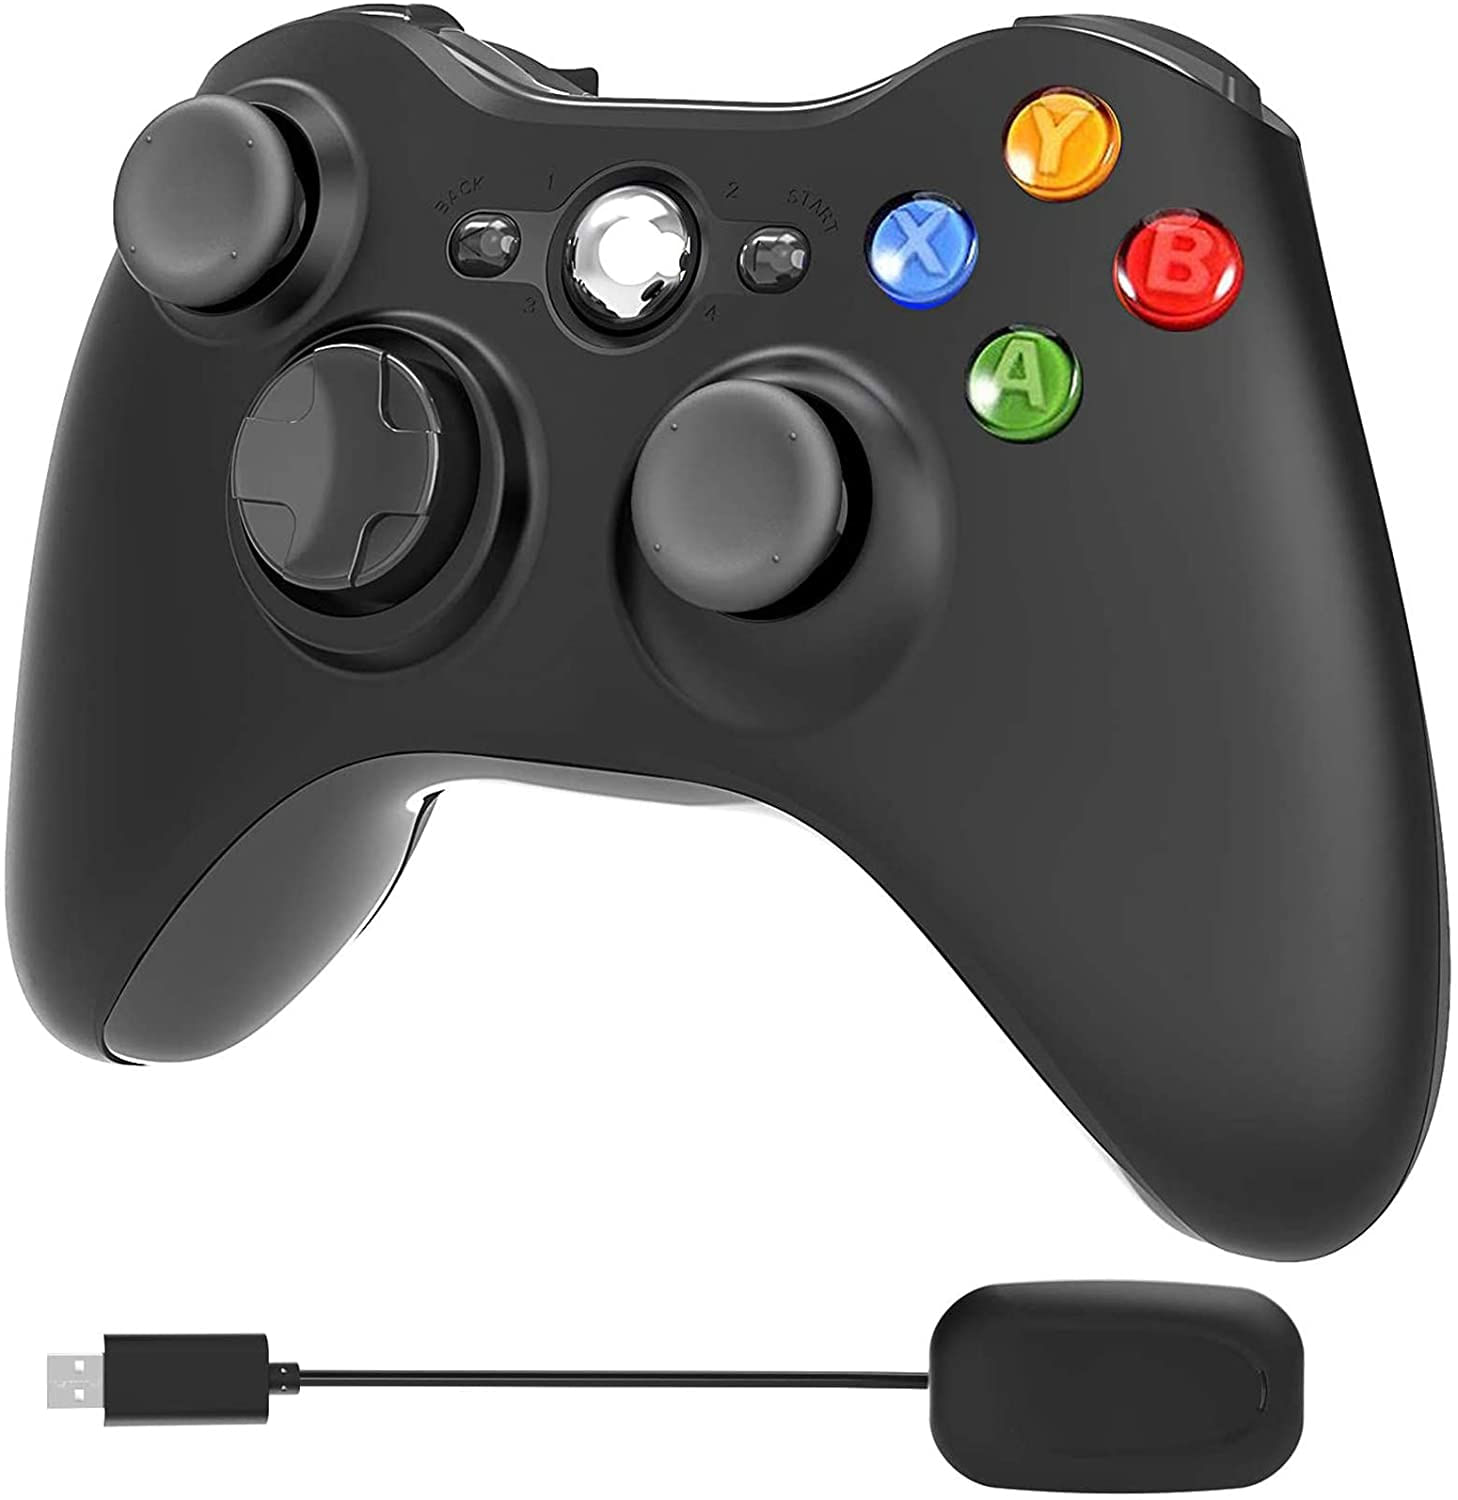 YCCSKY Controlador com fio, controlador com fio usb gamepad joystick  joystick controlador de jogo com dois vbt e botões de gatilho para xbox 360  Slim PC Windows 7/8/10 preto